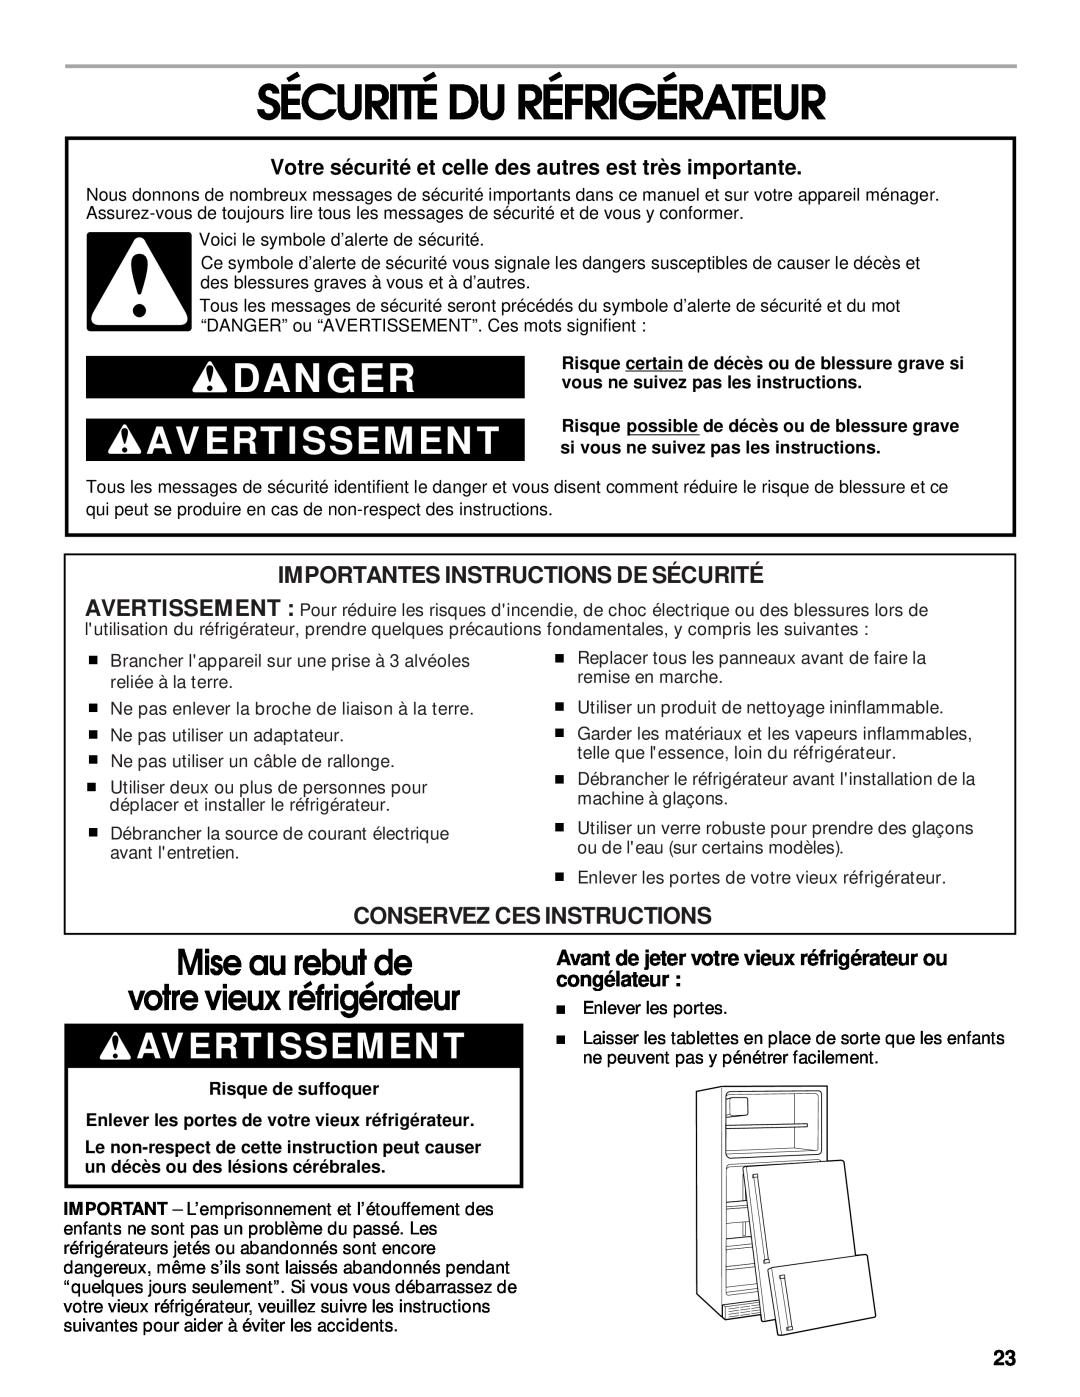 Whirlpool 2199011 manual Sécurité Du Réfrigérateur, Mise au rebut de votre vieux réfrigérateur, Avertissement, Danger 